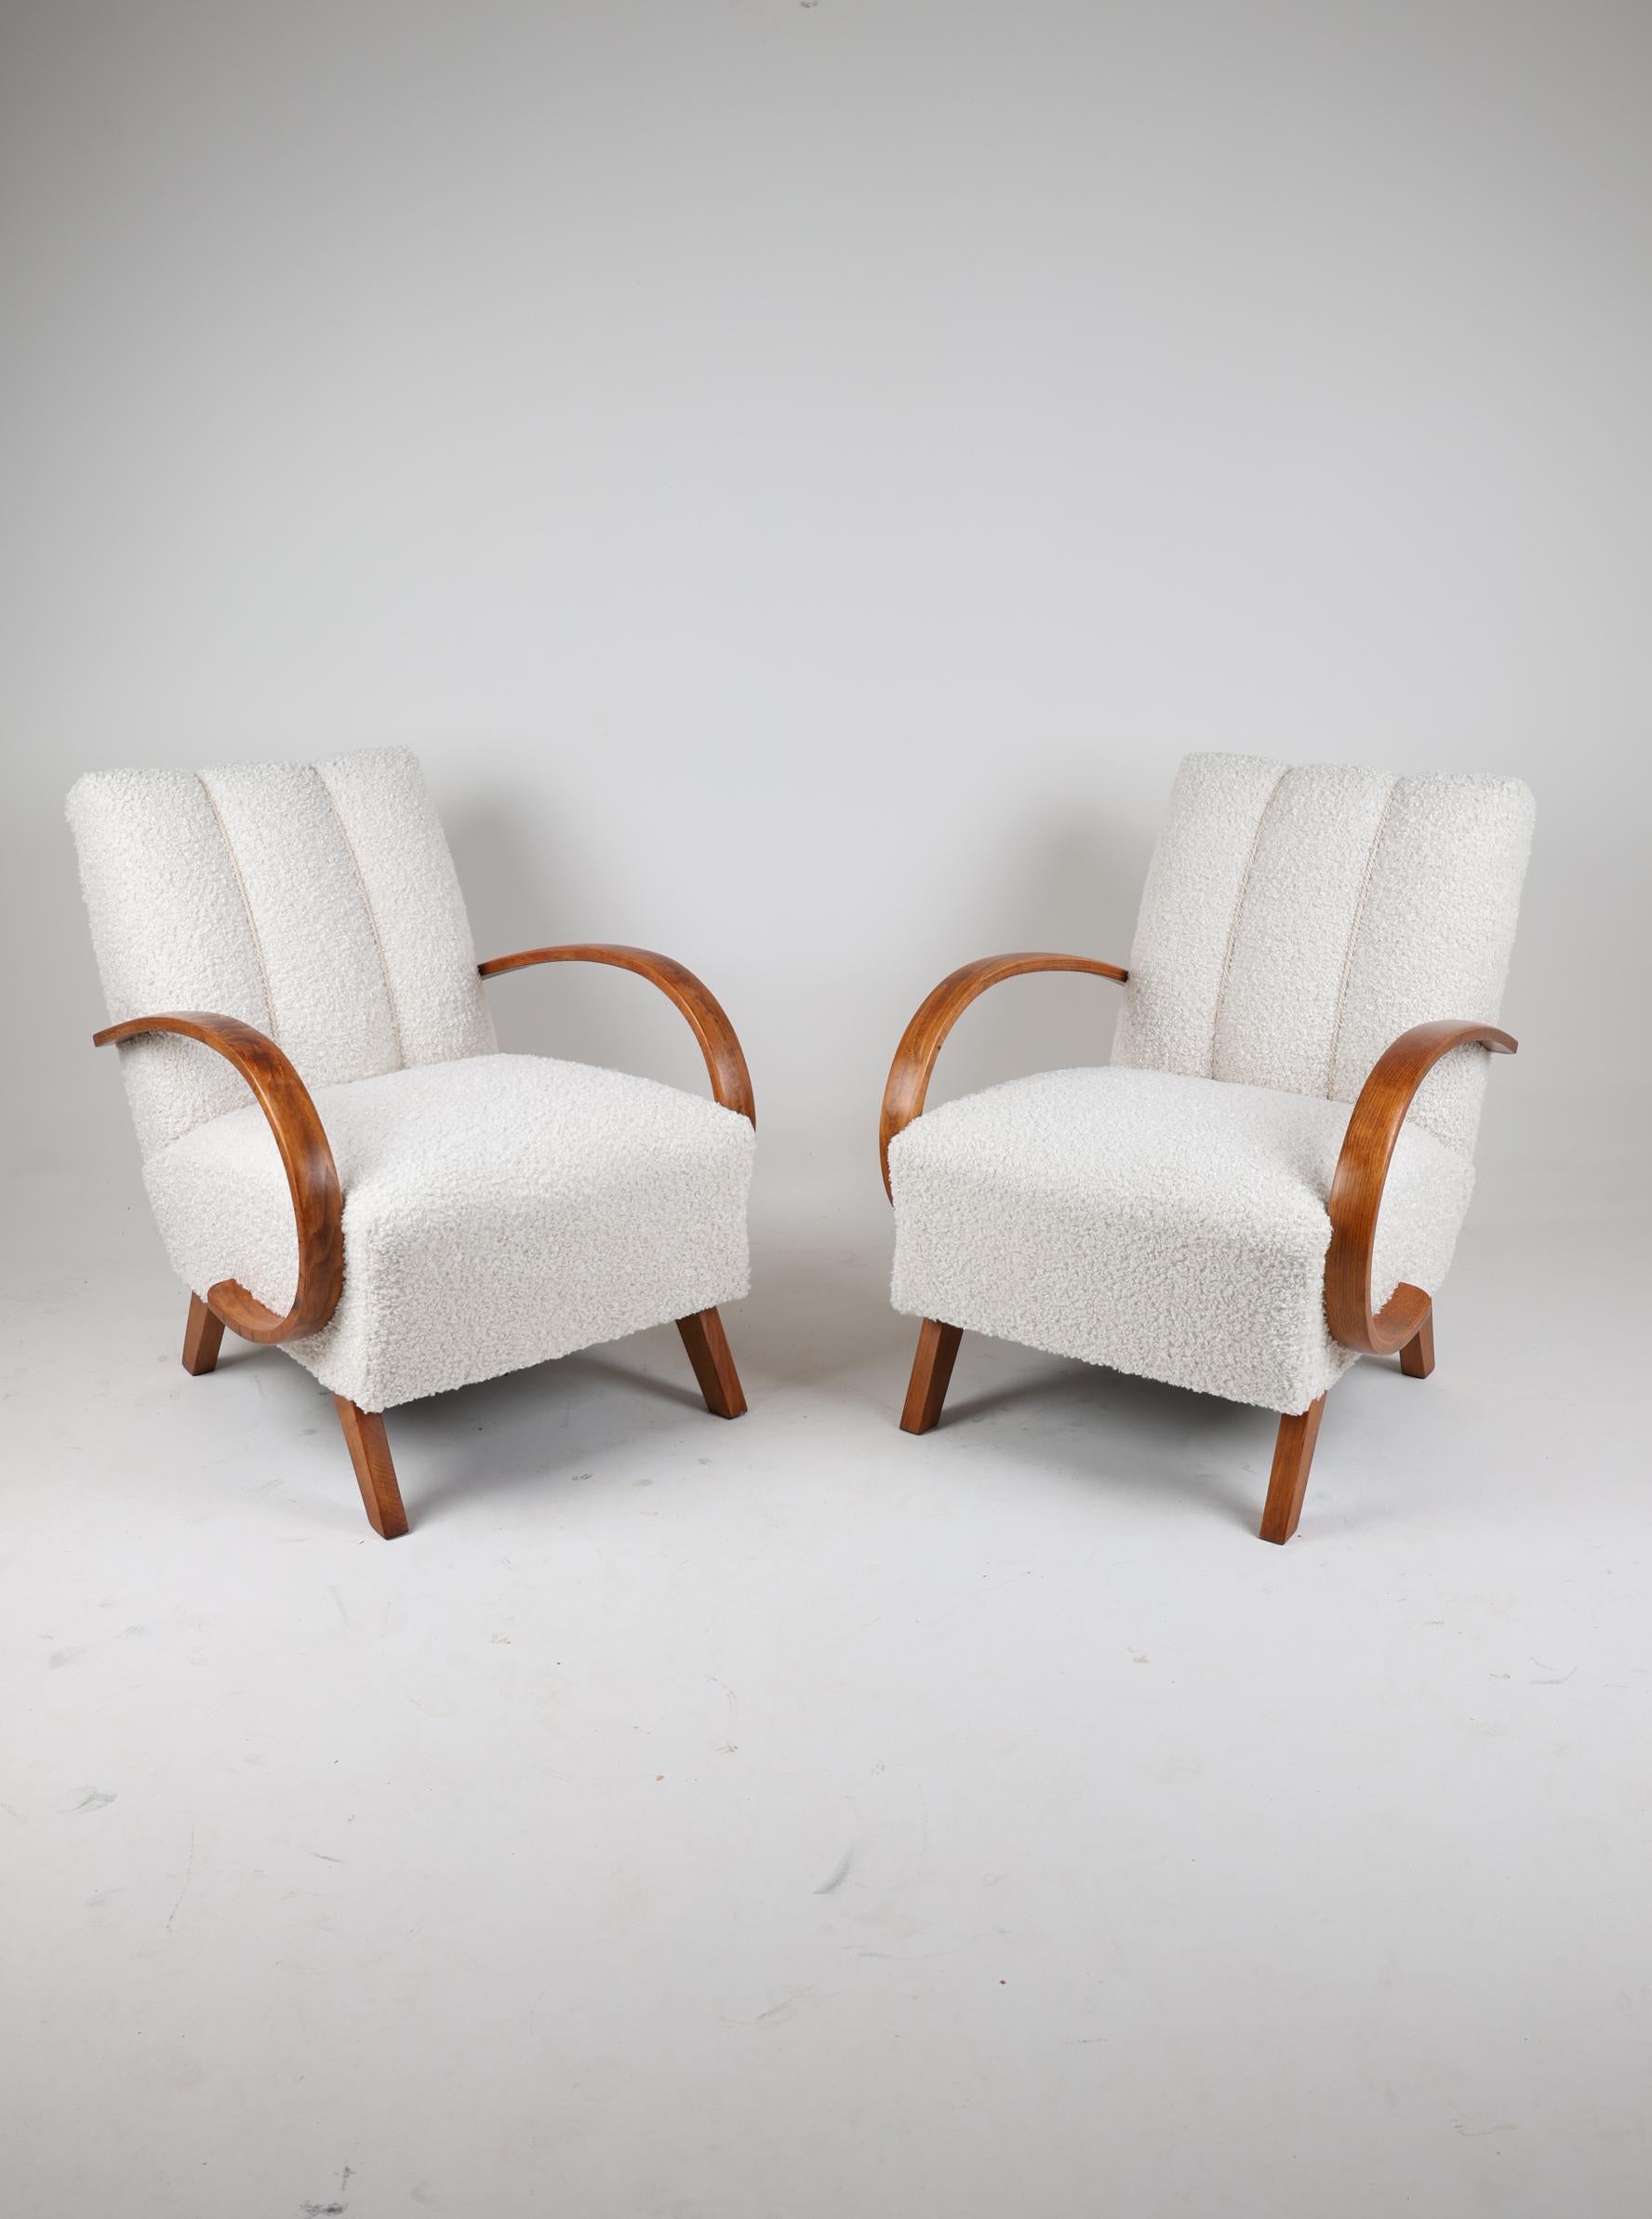 Ein Paar Sessel H-410 von Jindrich Halabala 
Tschechische Republik,  1950

Ein Paar Sessel des tschechischen Möbeldesigners J. Halabala.
Ein Sessel mit perfekten Proportionen und einer zeitlosen Form. Die Hauptfigur ist das Modell H 410 von Jendrich